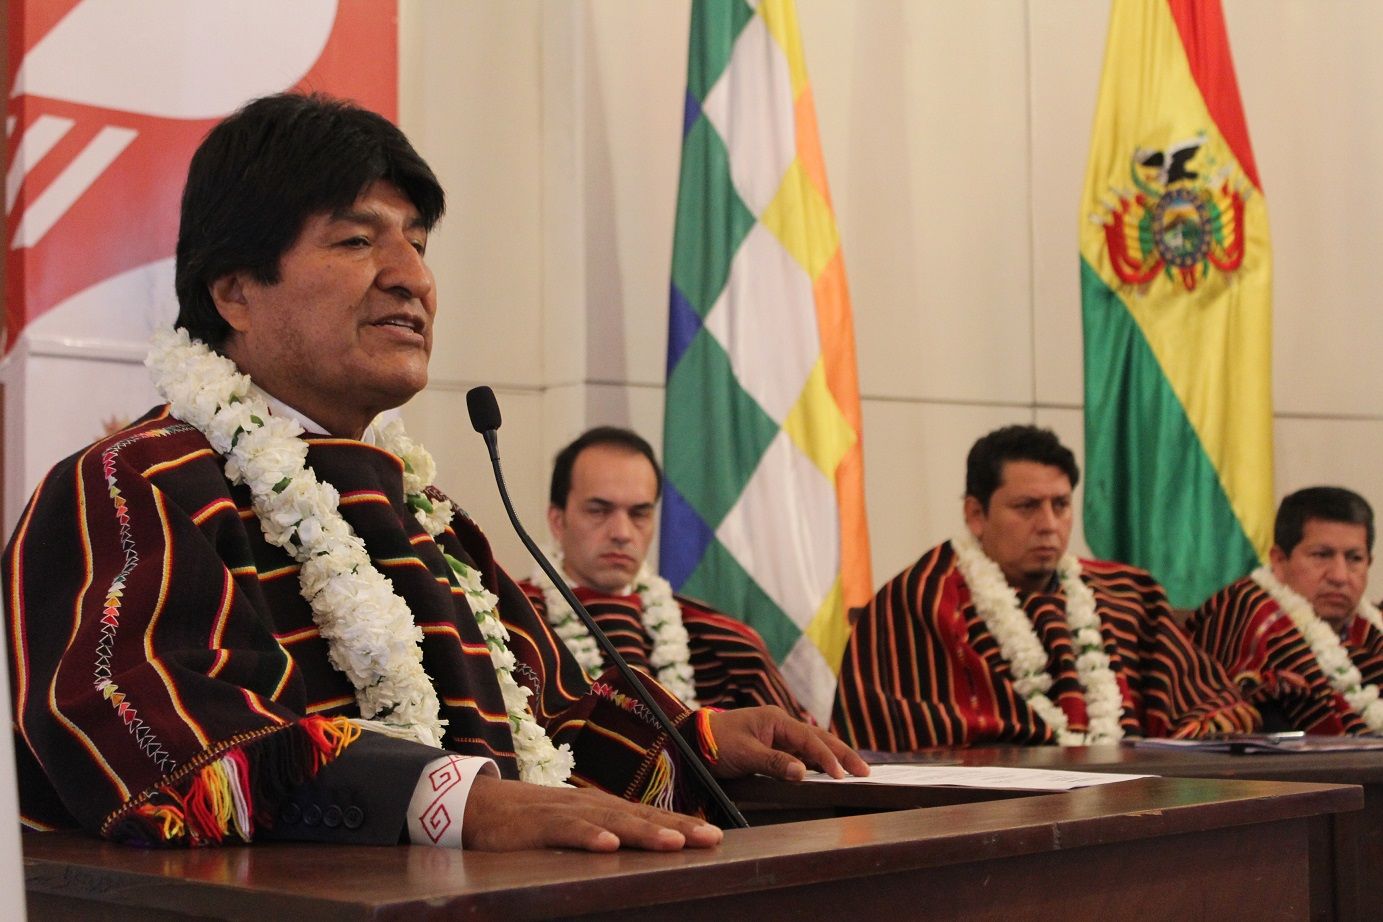 El mandatario boliviano sugirió que la ayuda que puede hacer EE.UU. a Venezuela es respetar su soberanía.